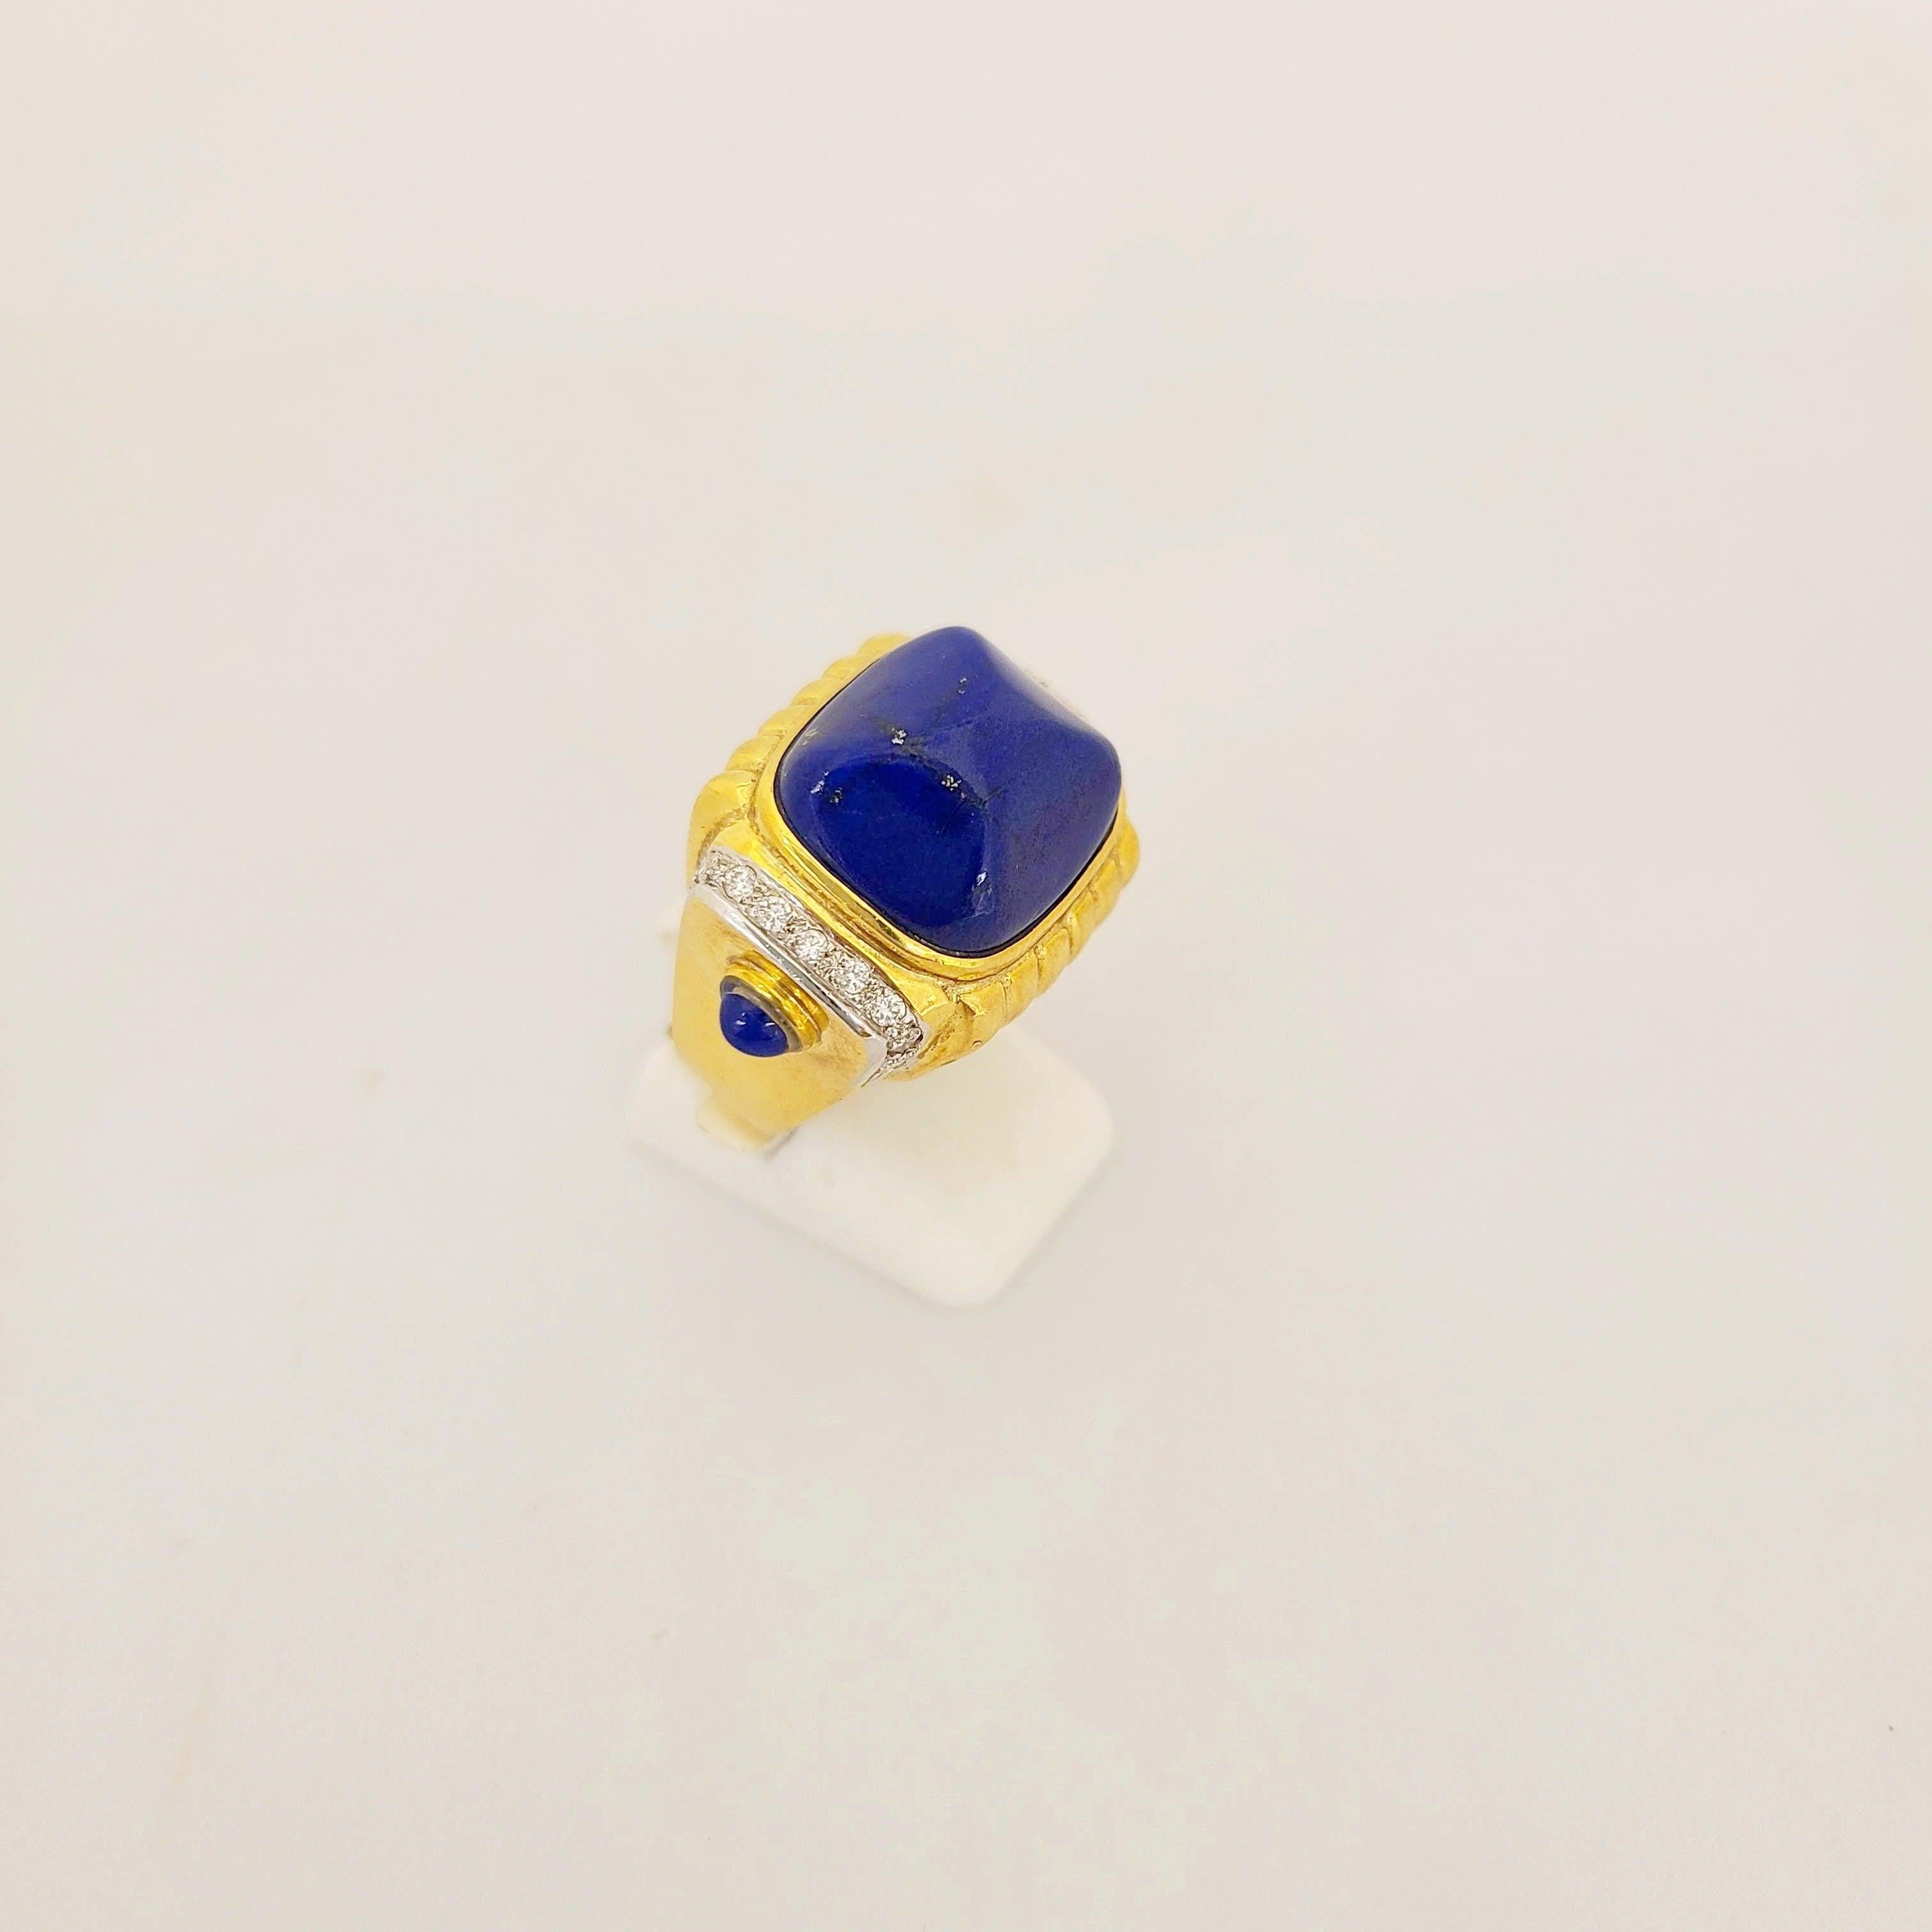 Cette bague en or jaune 18 carats, signée Cellini Jewelers NYC, est conçue avec un grand cabochon Lapis Lazuli en forme de pain de sucre au centre. L'anneau est rehaussé de 0,30 cts. d'or  diamants ronds et 2 cabs de lapis plus petits.
Estampillé